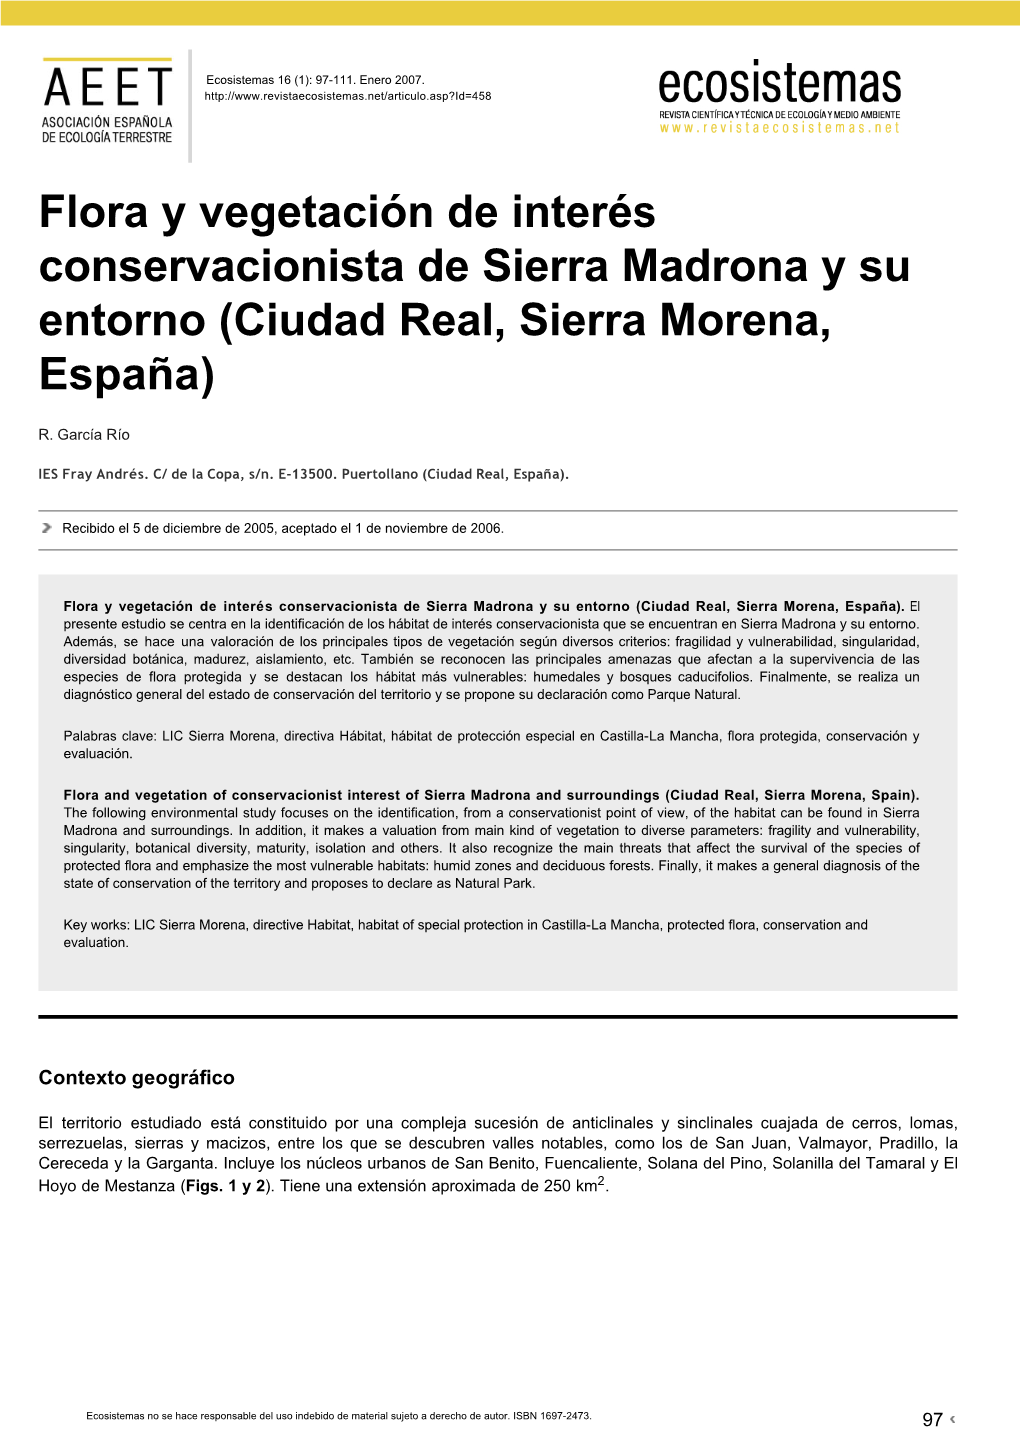 Flora Y Vegetación De Interés Conservacionista De Sierra Madrona Y Su Entorno (Ciudad Real, Sierra Morena, España)